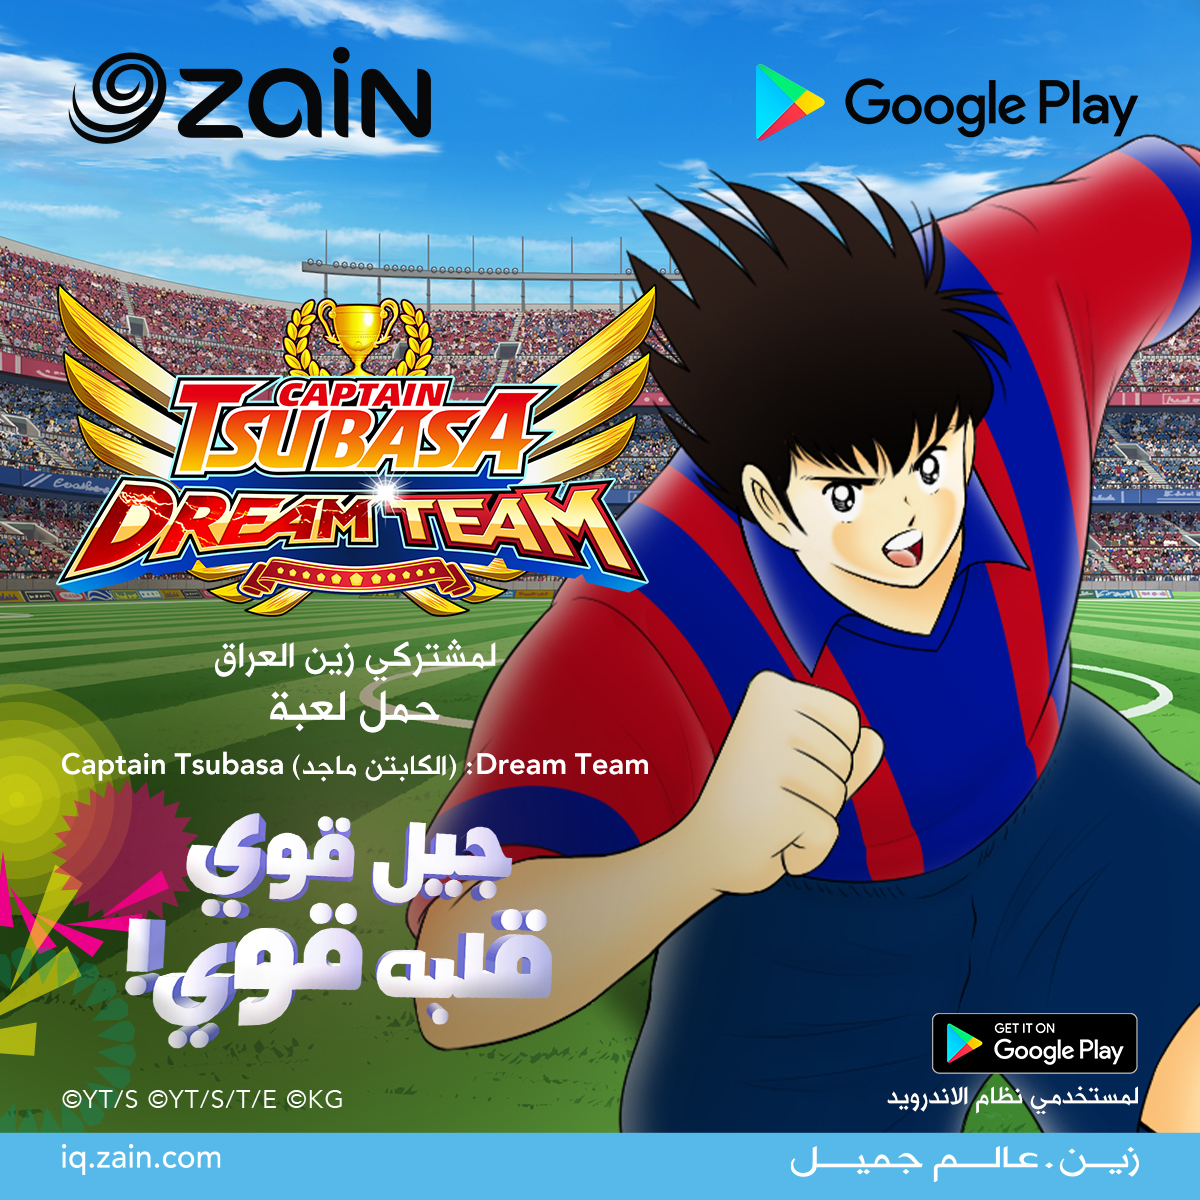  “Captain Tsubasa: Dream Team” تحتفل بانطلاقها العراق مع زين العراق بحملة مميزة! 